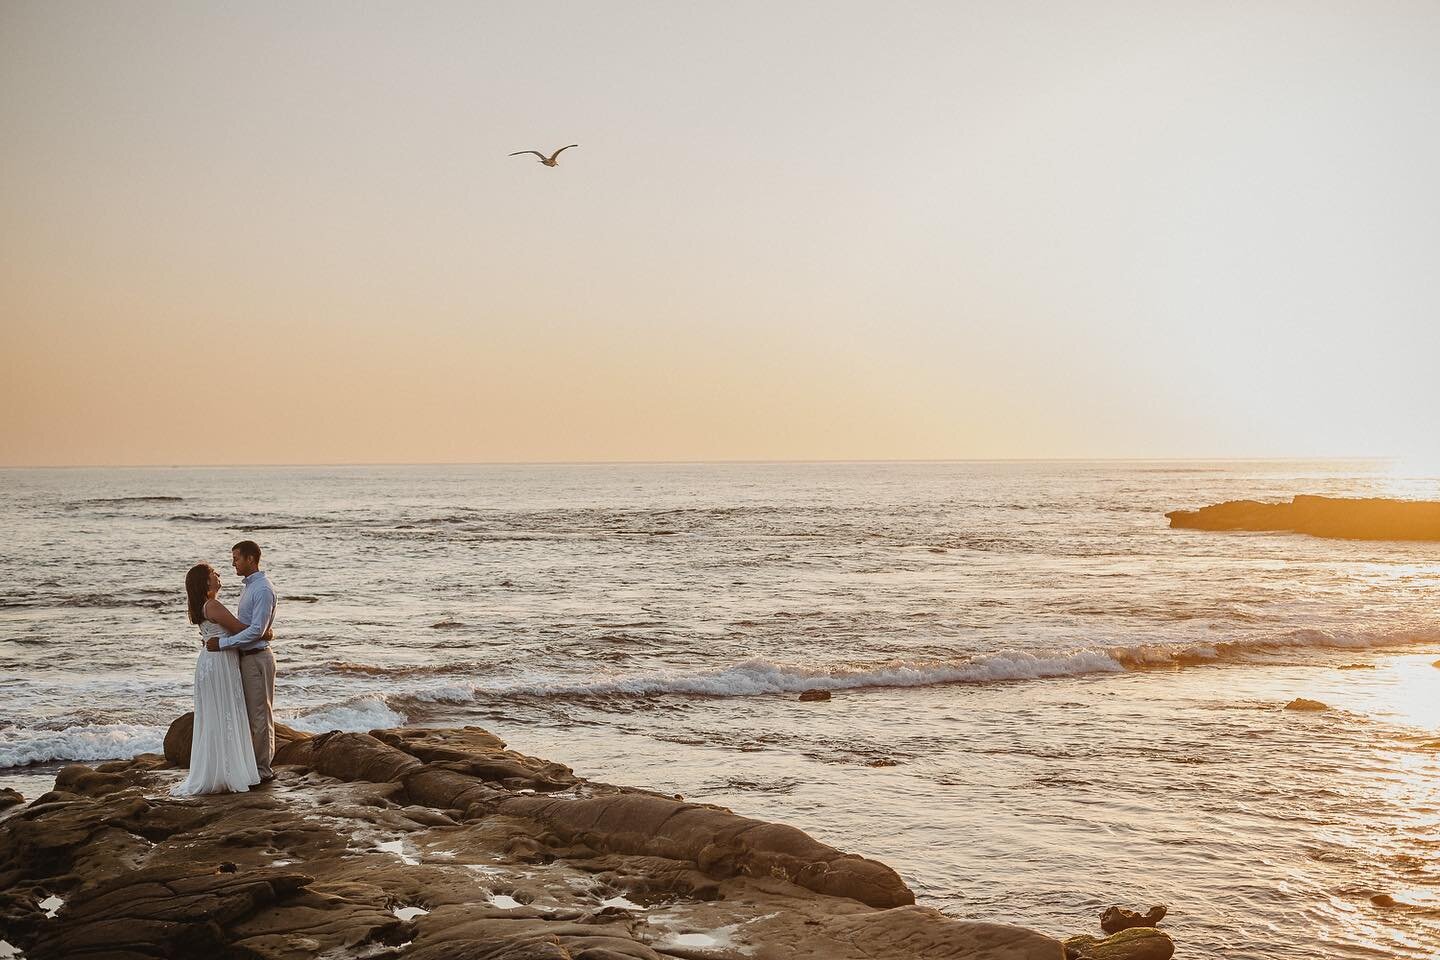 Jake + Cara, in La Jolla.⁠⠀⁠
.⁣⠀⁣⠀⁠⠀⁠
.⁣⠀⁣⠀⁠⠀⁠
.⁣⠀⁣⠀⁠⠀⁠
.⁣⠀⁣⠀⁠⠀⁠
.⁣⠀⁣⠀⁠⠀⁠
.⁣⠀⁣⠀⁠⠀⁠
.⁣⠀⁣⠀⁠⠀⁠
.⁣⠀⁣⠀⁠⠀⁠
.⁣⠀⁣⠀⁠⠀⁠
.⁠⠀⁠
#weddingphotos  #weddingphotography⠀⠀⠀⠀⁣⠀⁣⠀⁠⠀⁠
#wedding⠀⠀⠀⠀⁣⠀⁣⠀⁠⠀⁠
#engagement  #SanDiegoWeddingPhotographer #SanDiegoWeddingPhotograph